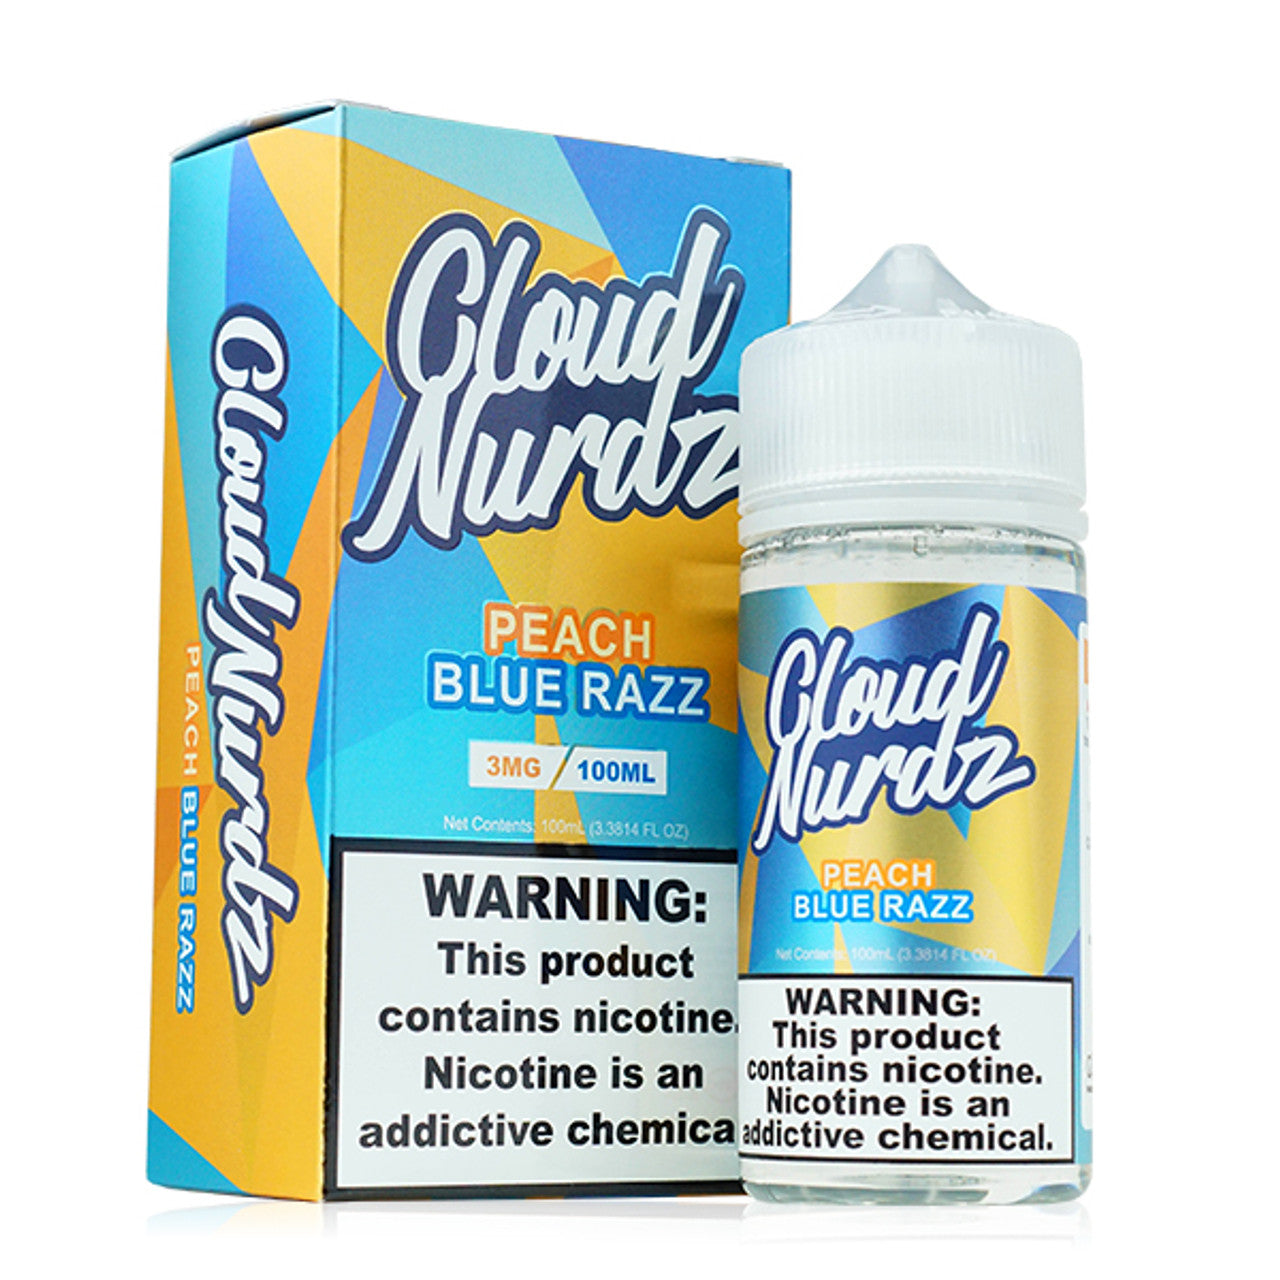 Cloud Nurdz Series E-Liquid 100mL Peach Blue Razz with packaging